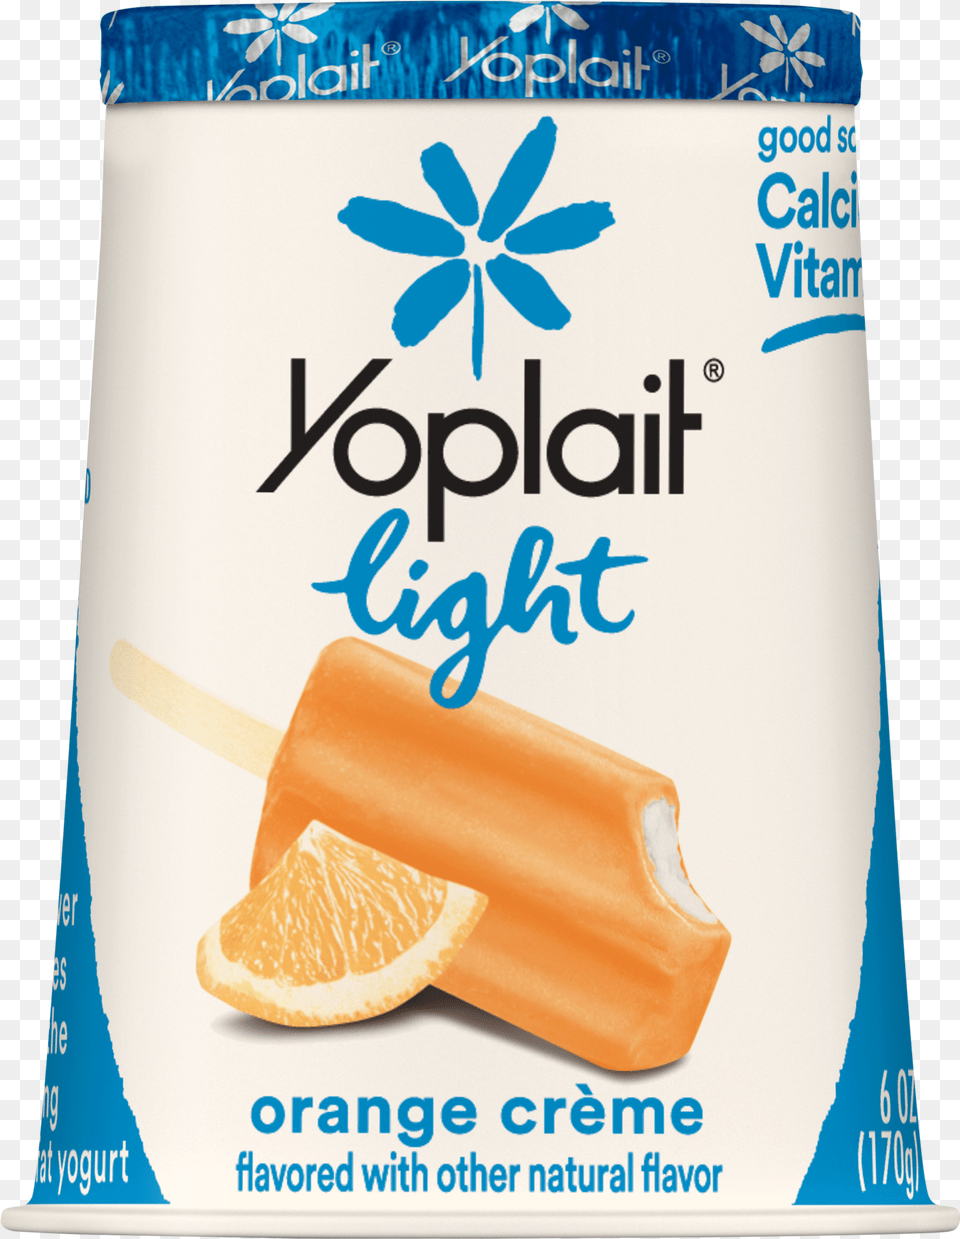 Yoplait Light Yogurt Fat Yogurt Orange Creme Yoplait Light Boston Cream Pie, Citrus Fruit, Food, Fruit, Plant Free Png Download